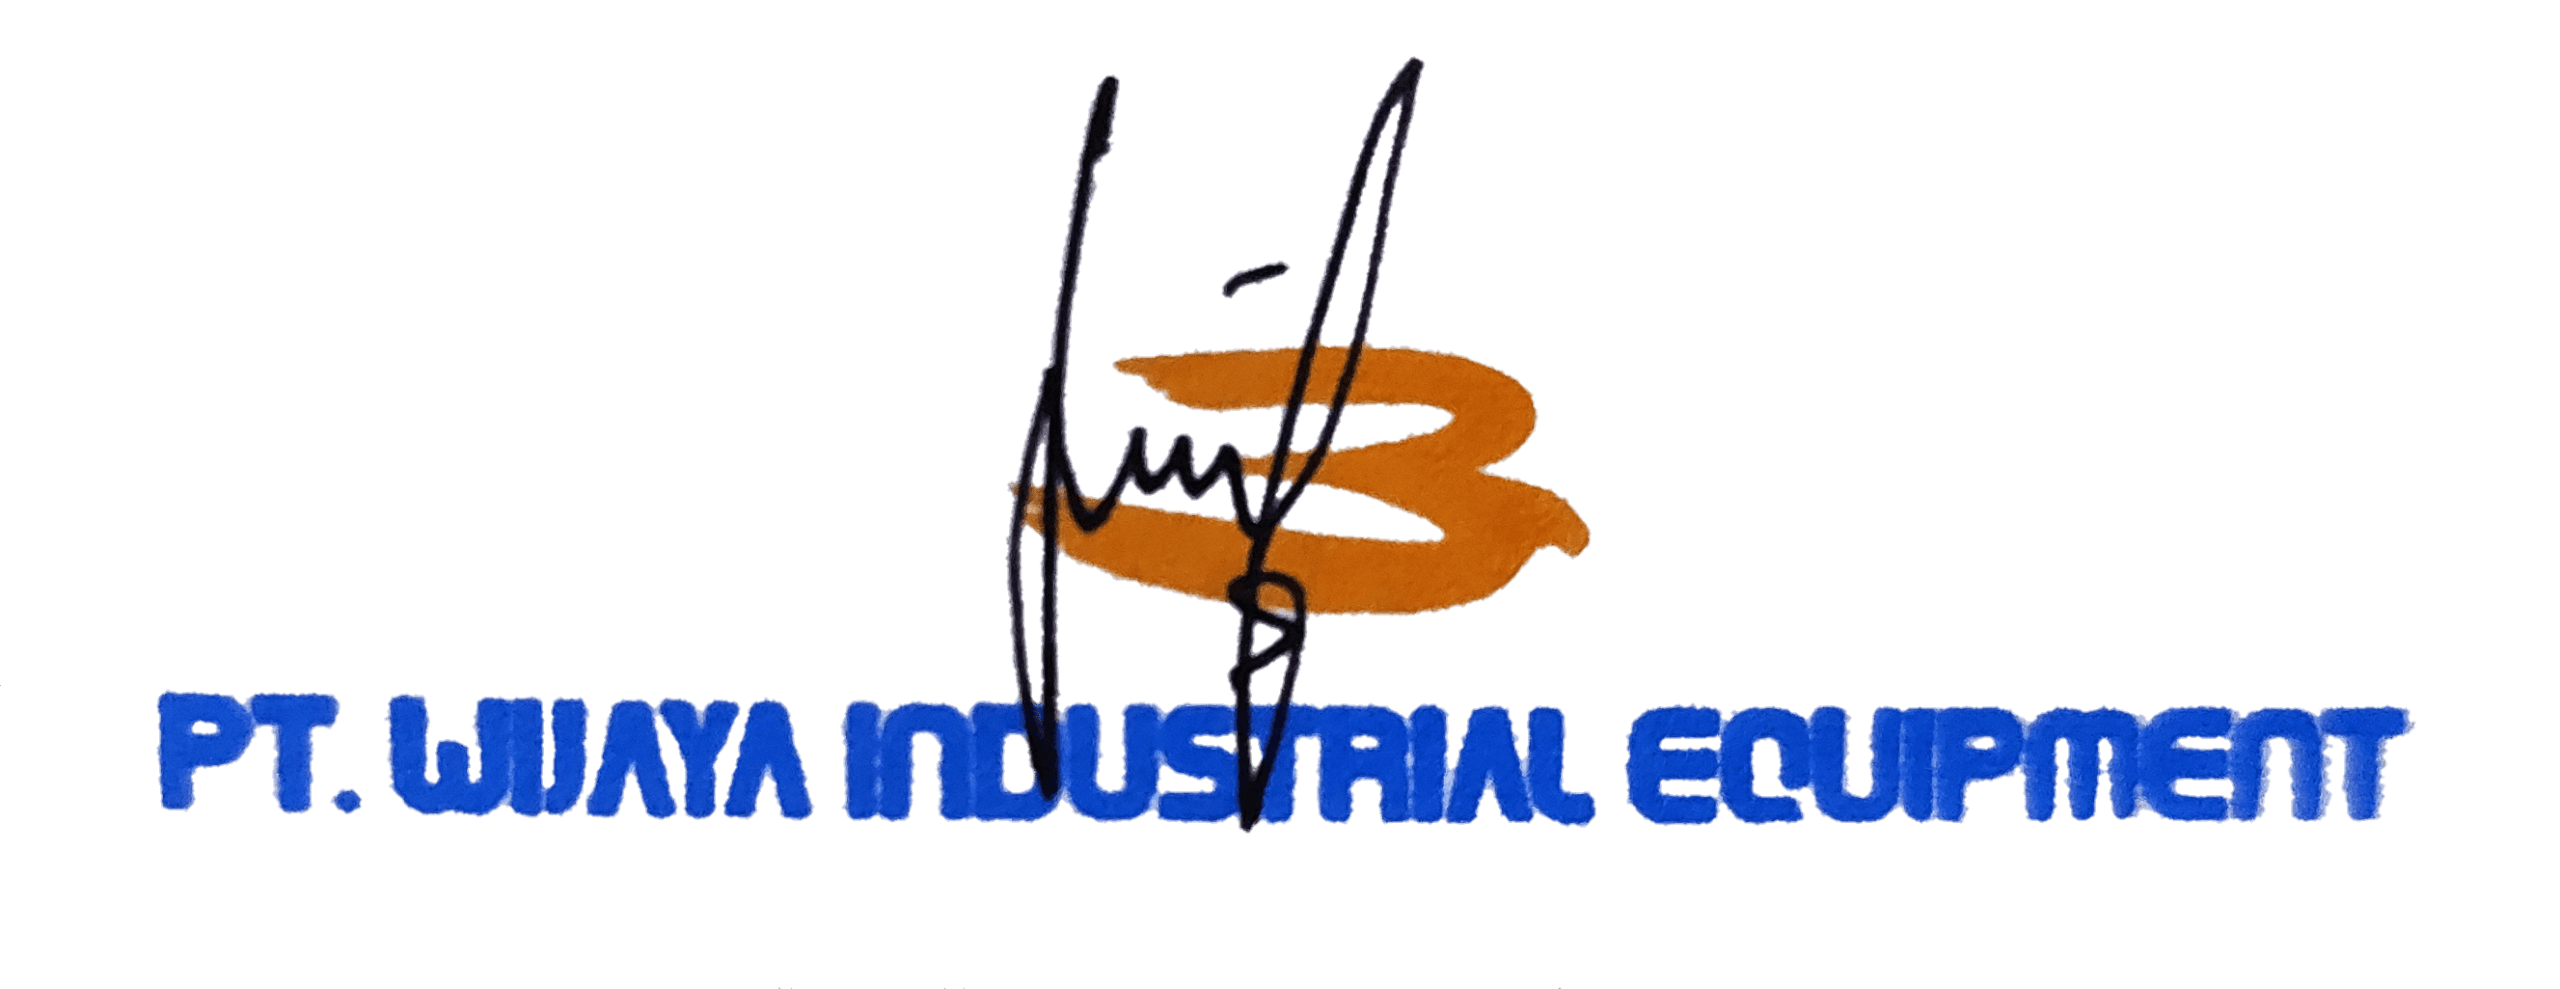 win equipment barcode signature